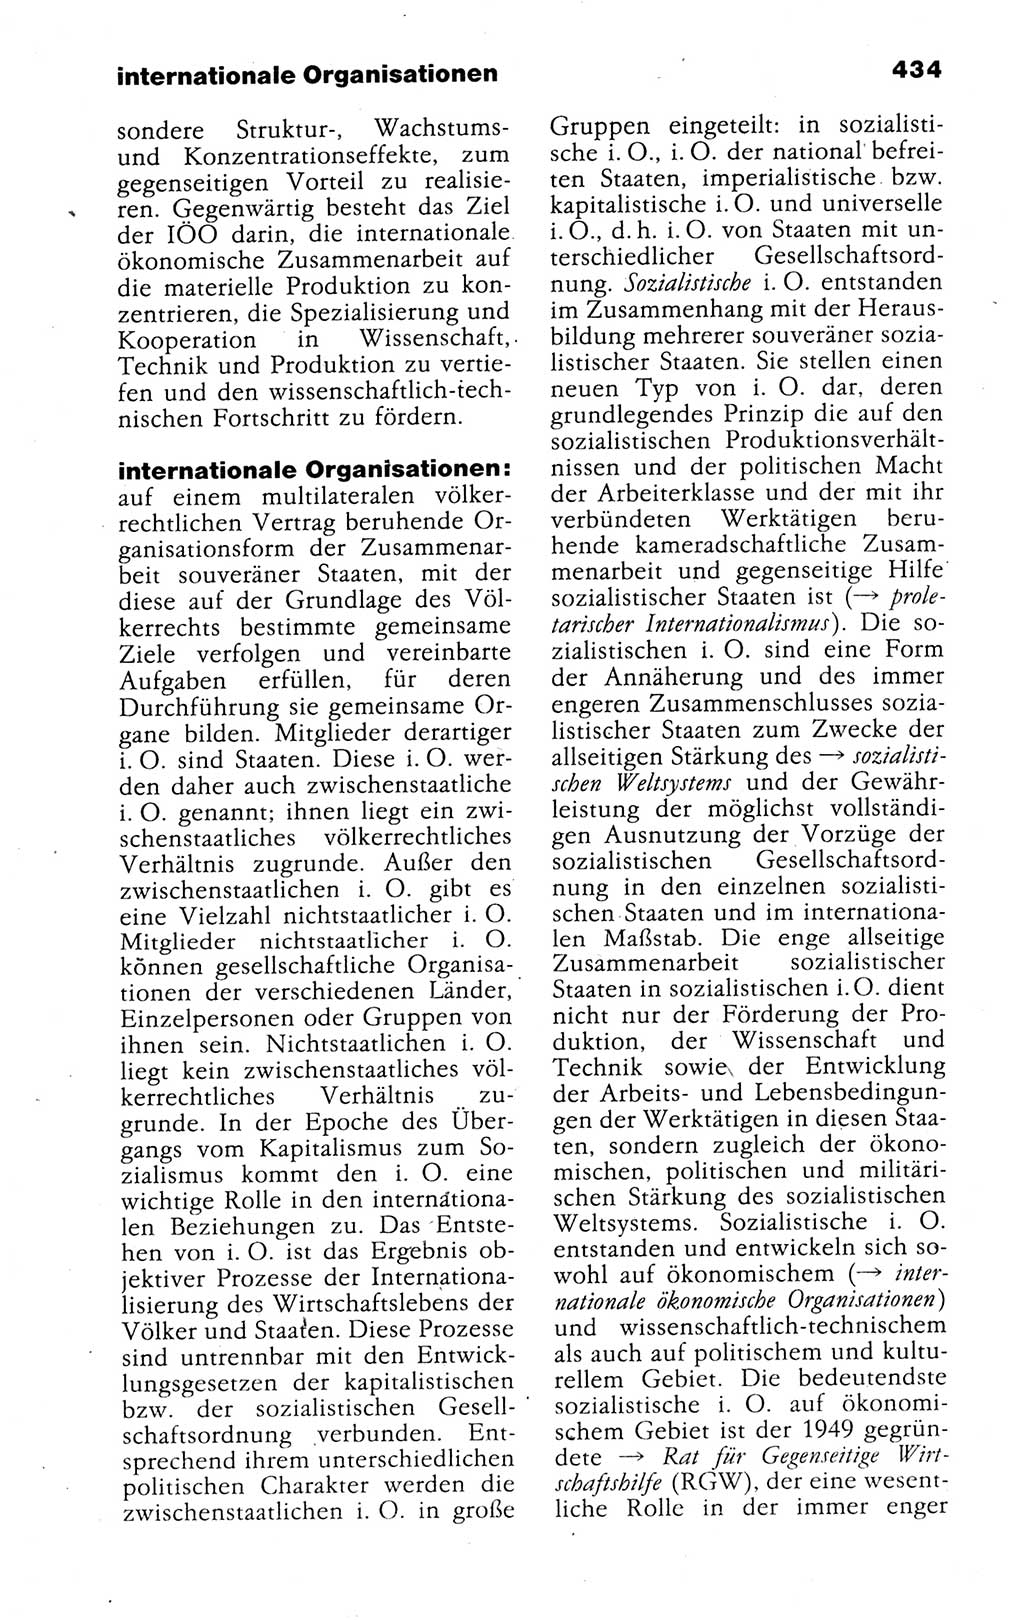 Kleines politisches Wörterbuch [Deutsche Demokratische Republik (DDR)] 1988, Seite 434 (Kl. pol. Wb. DDR 1988, S. 434)